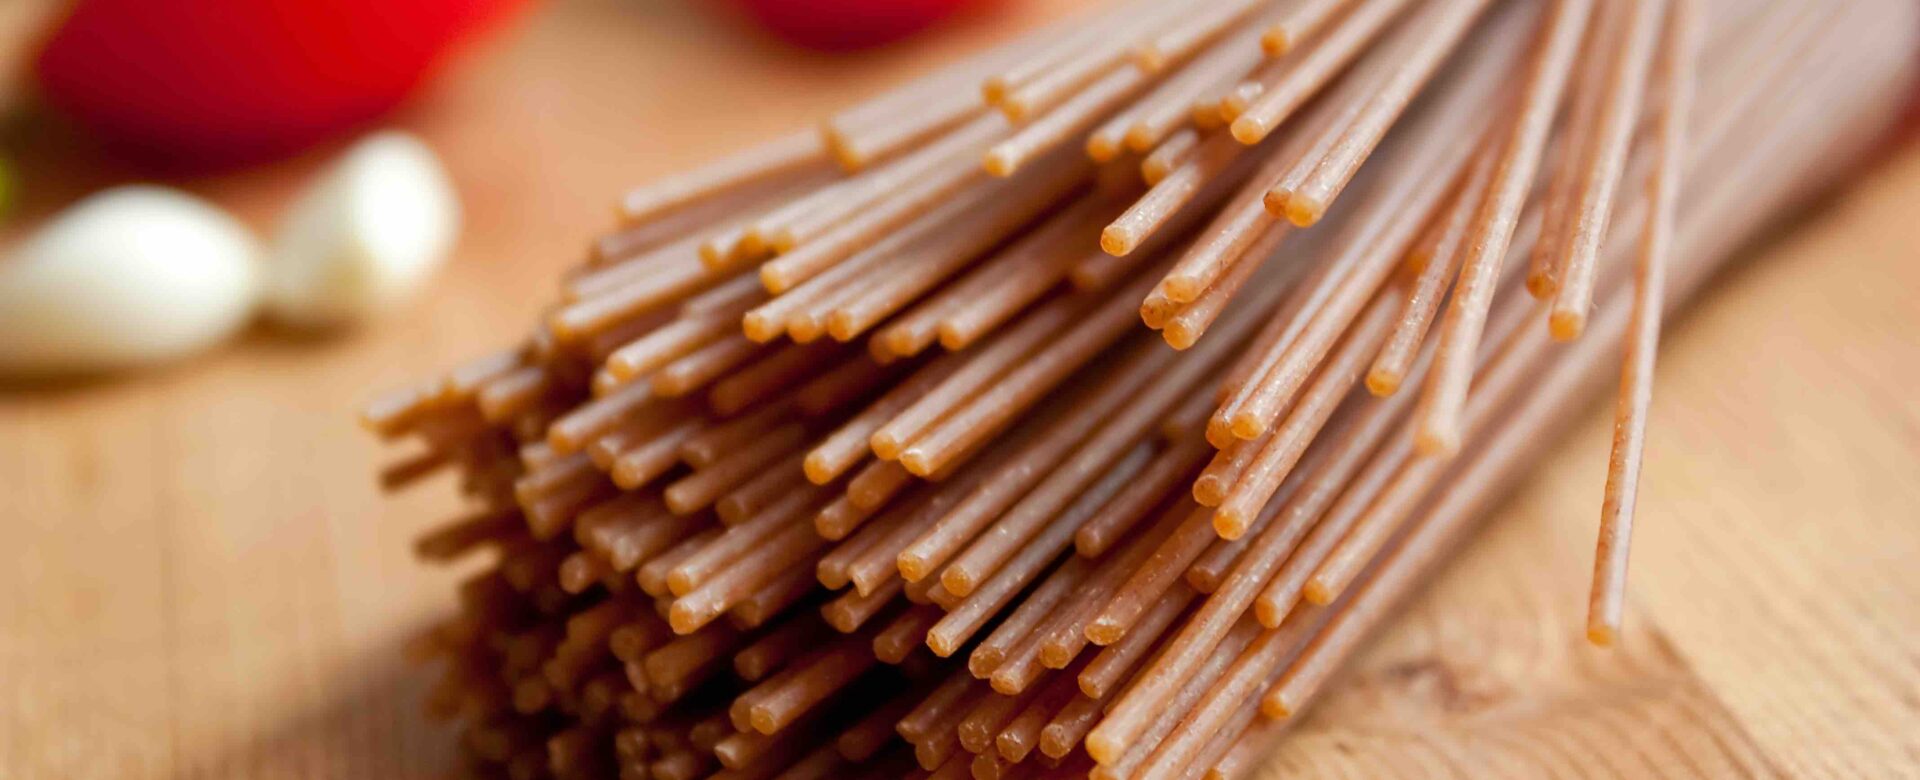 Hoeveel koolhydraten zitten er in spelt pasta?